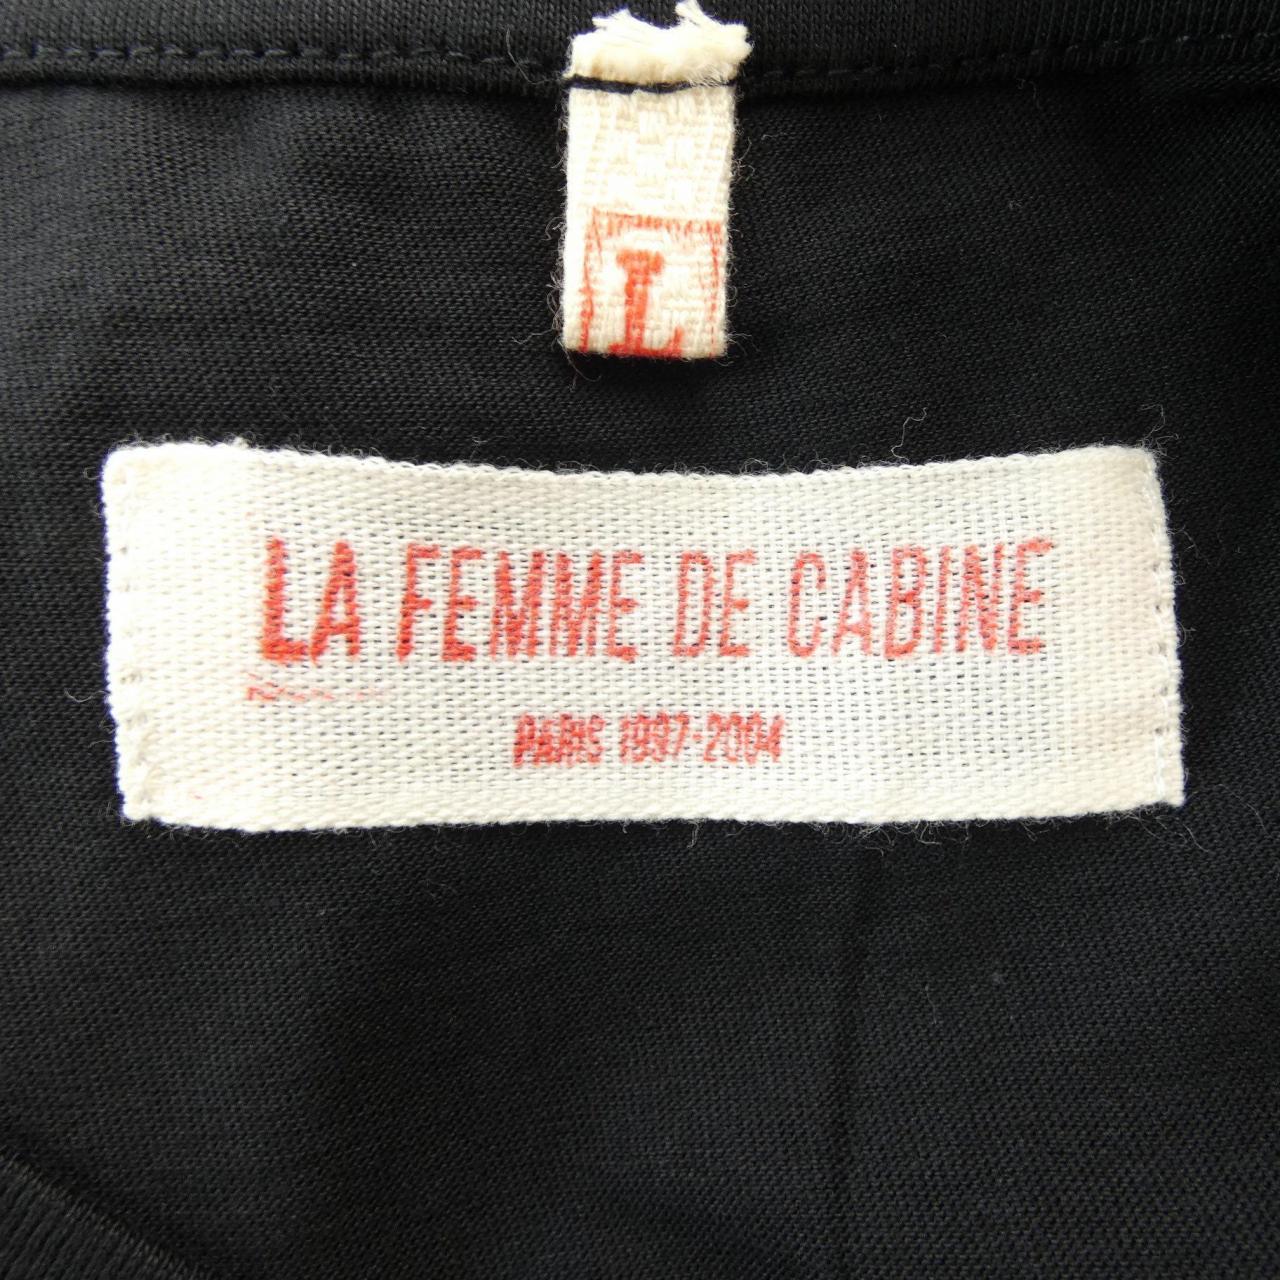 LA FEMME DE CABINE Tシャツ